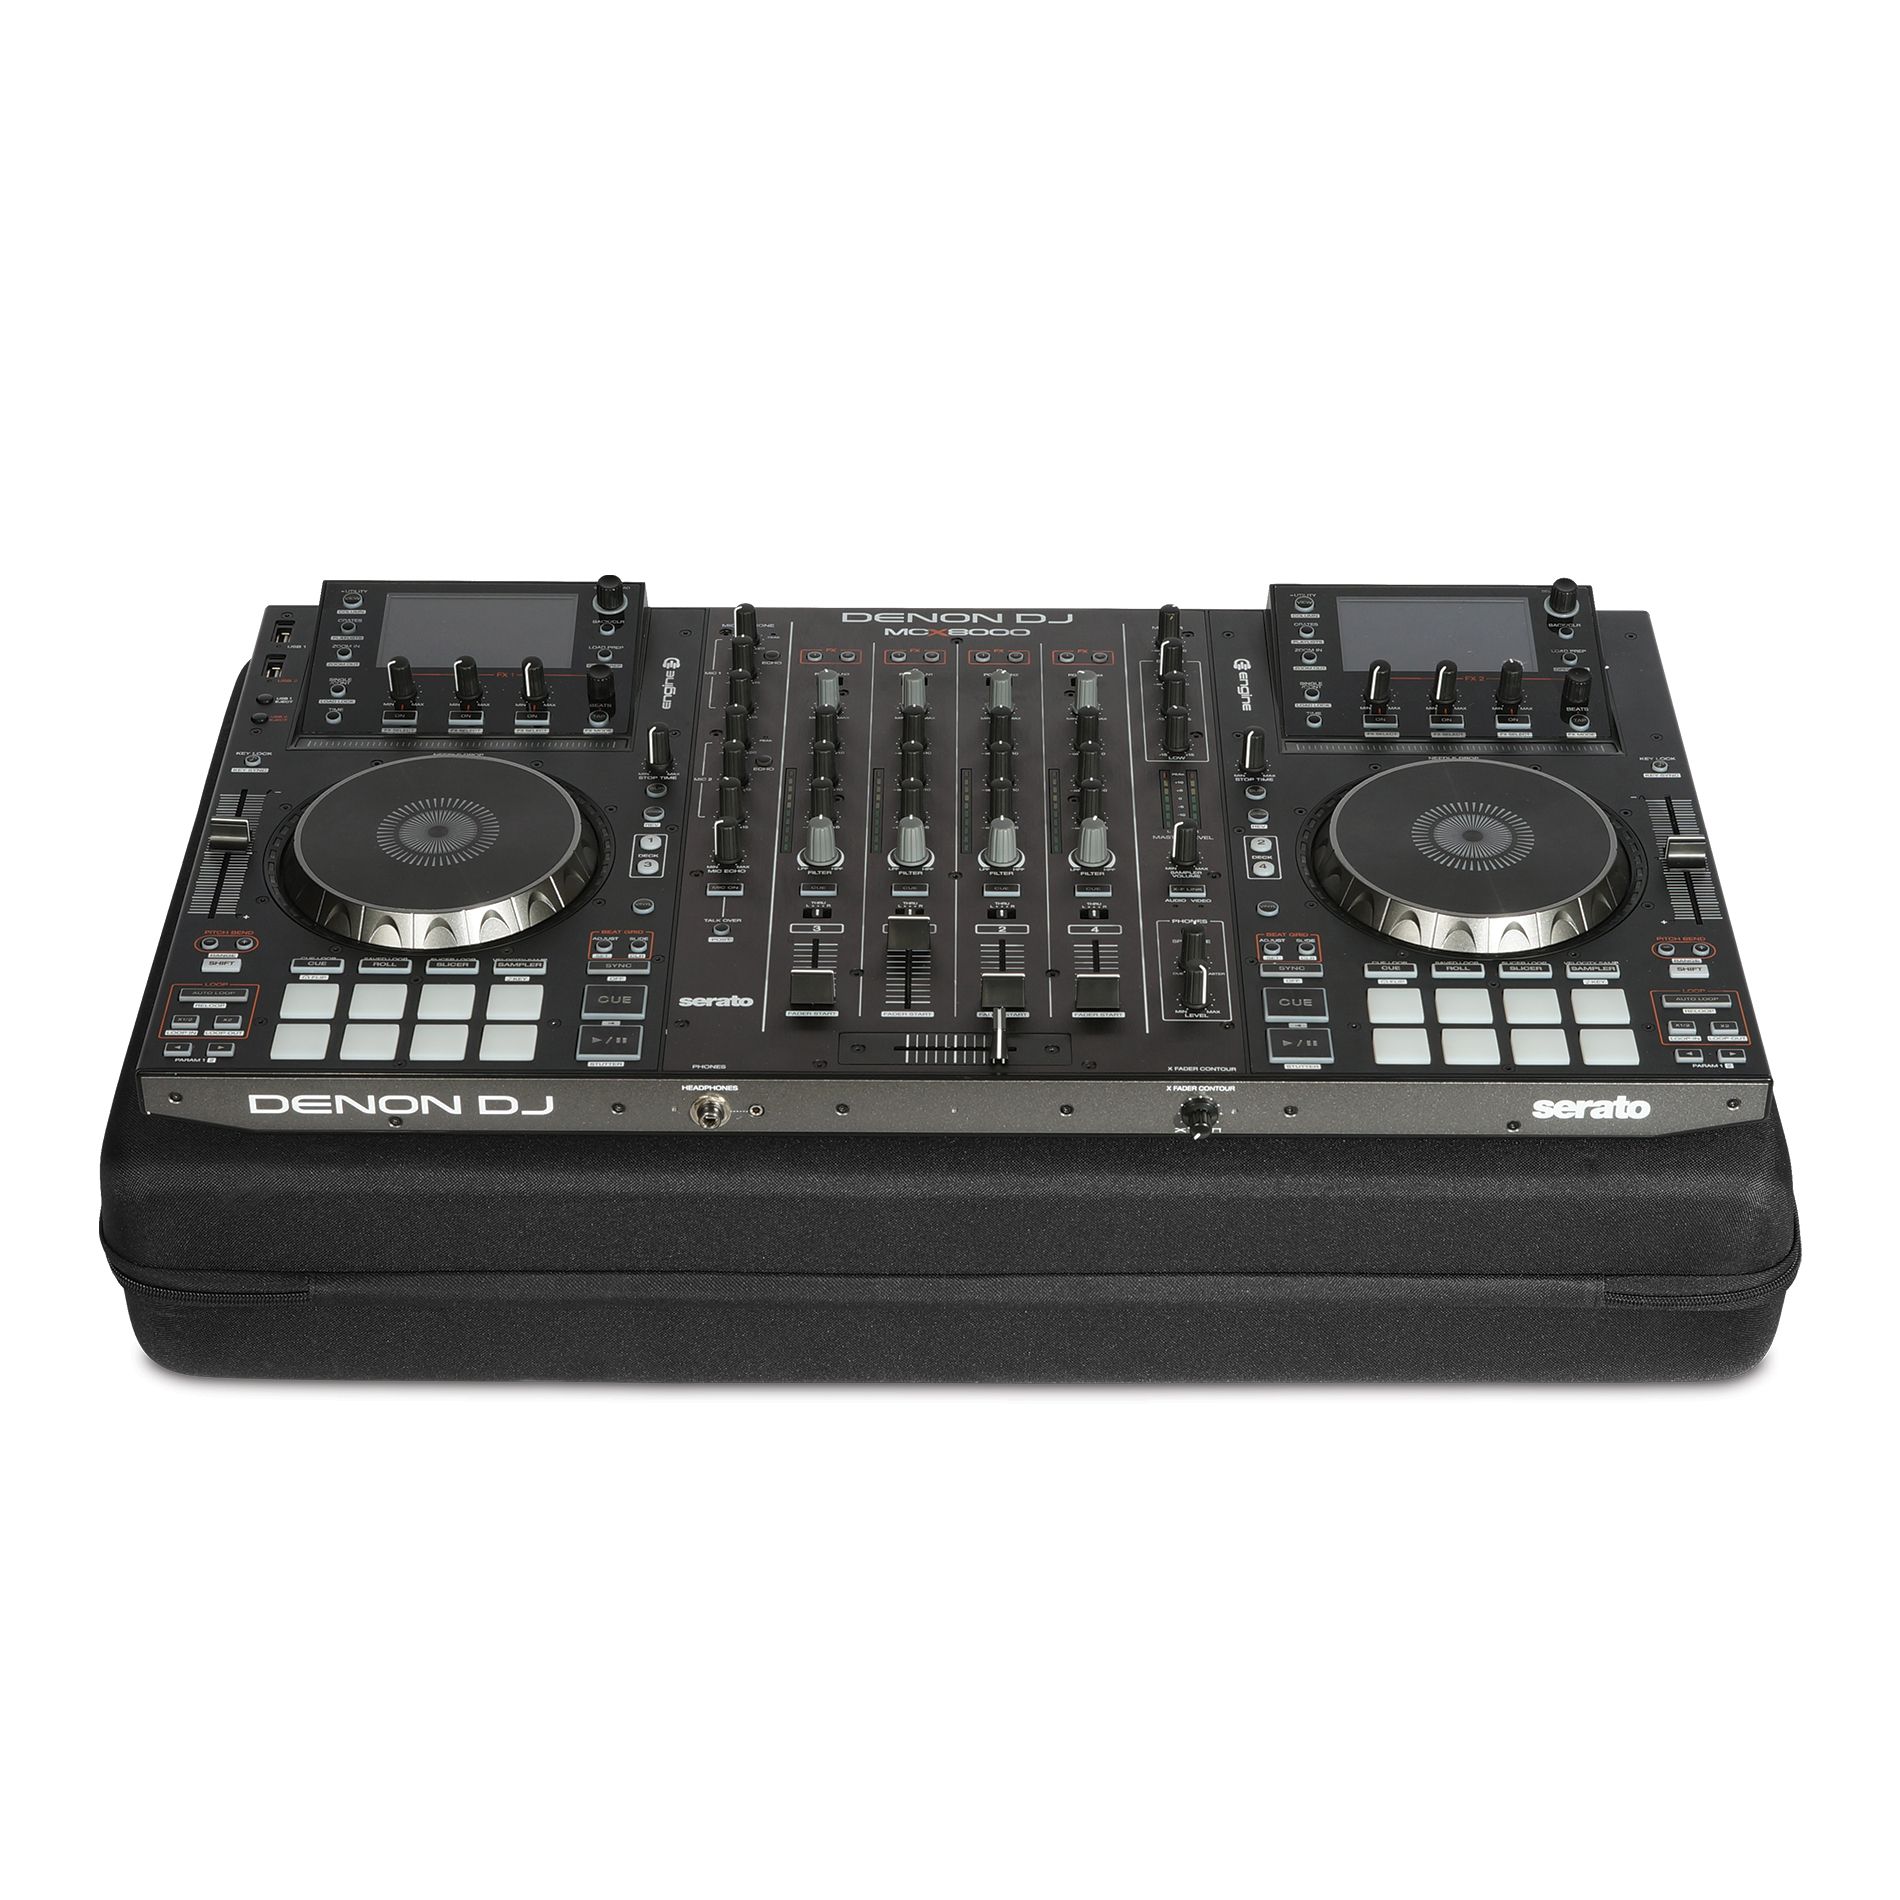 Udg U8305bl Pour Xdj-rx2 / Mcx8000 / Roland 808 - DJ hoes - Variation 2